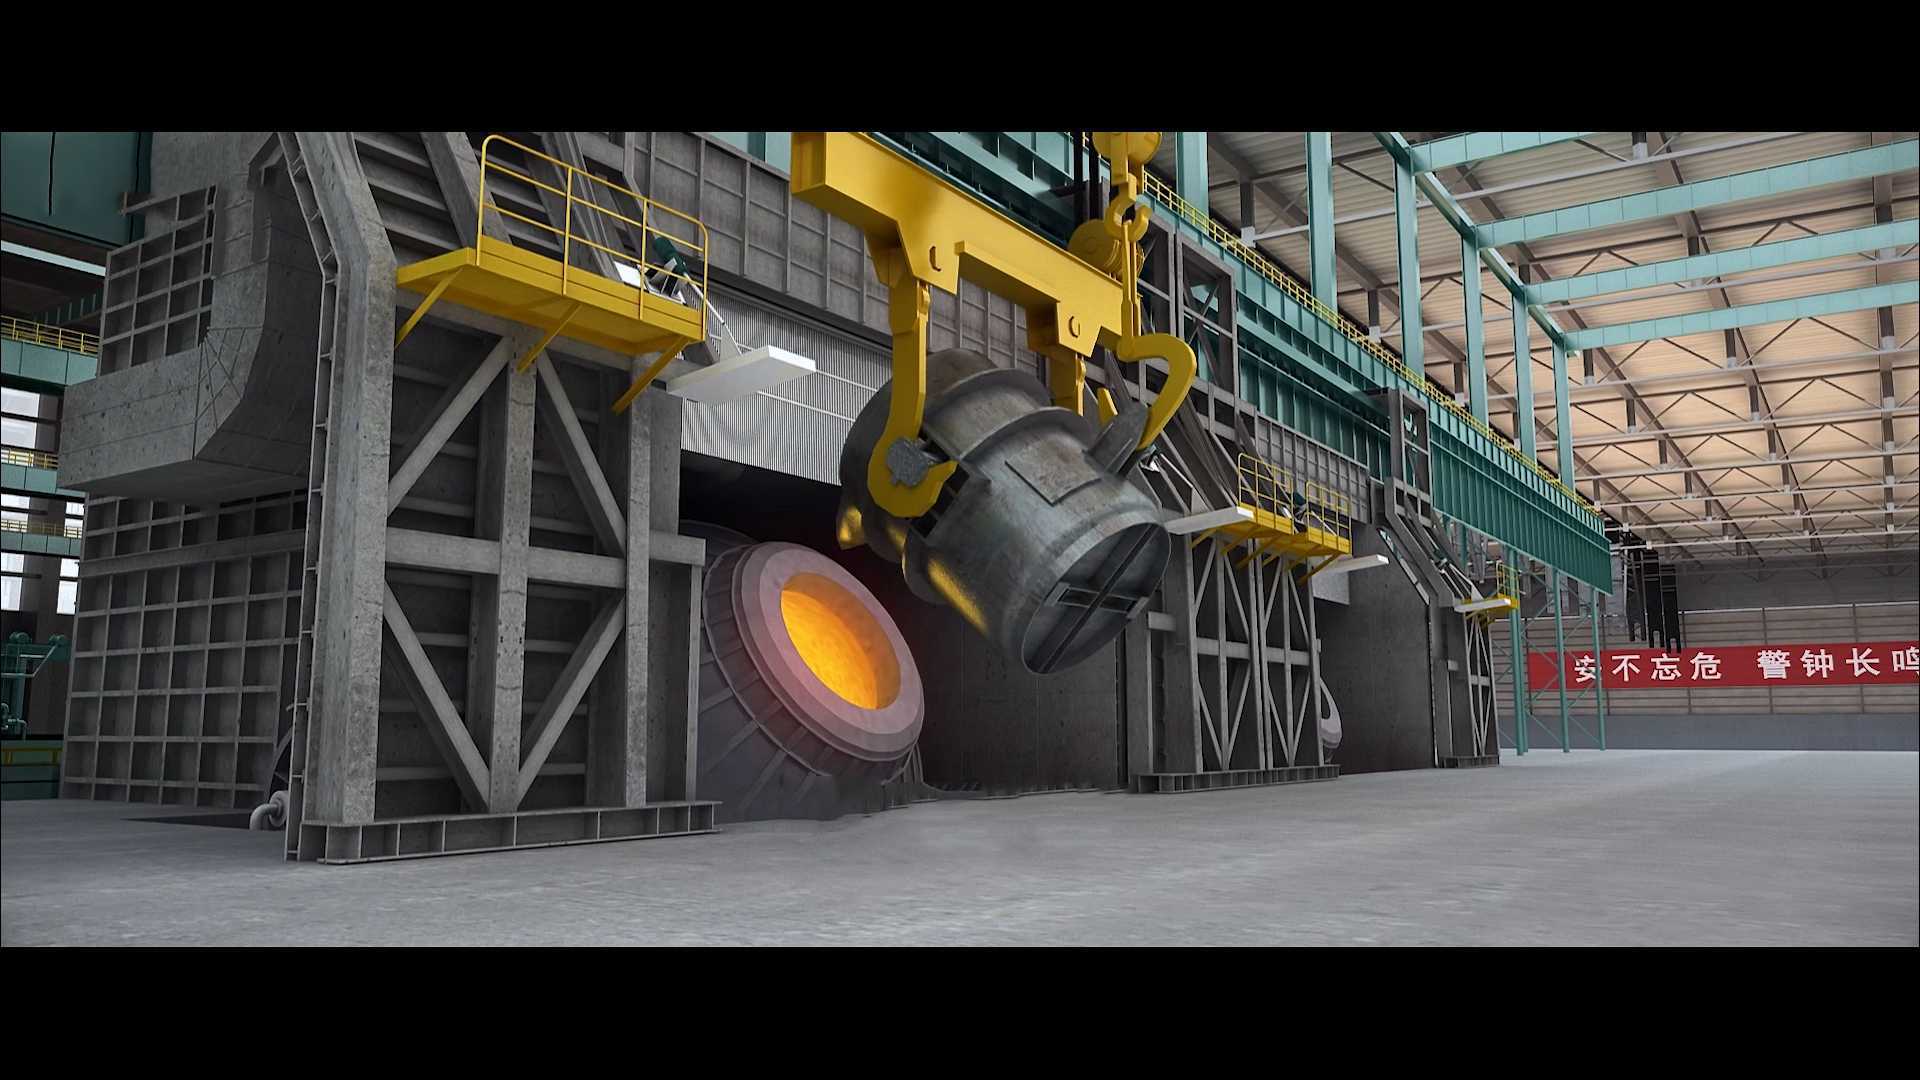 钢铁生产工艺全流程-钢铁冶炼生产线流程动画-高炉炼铁工艺流程-炼钢冶金动画演示